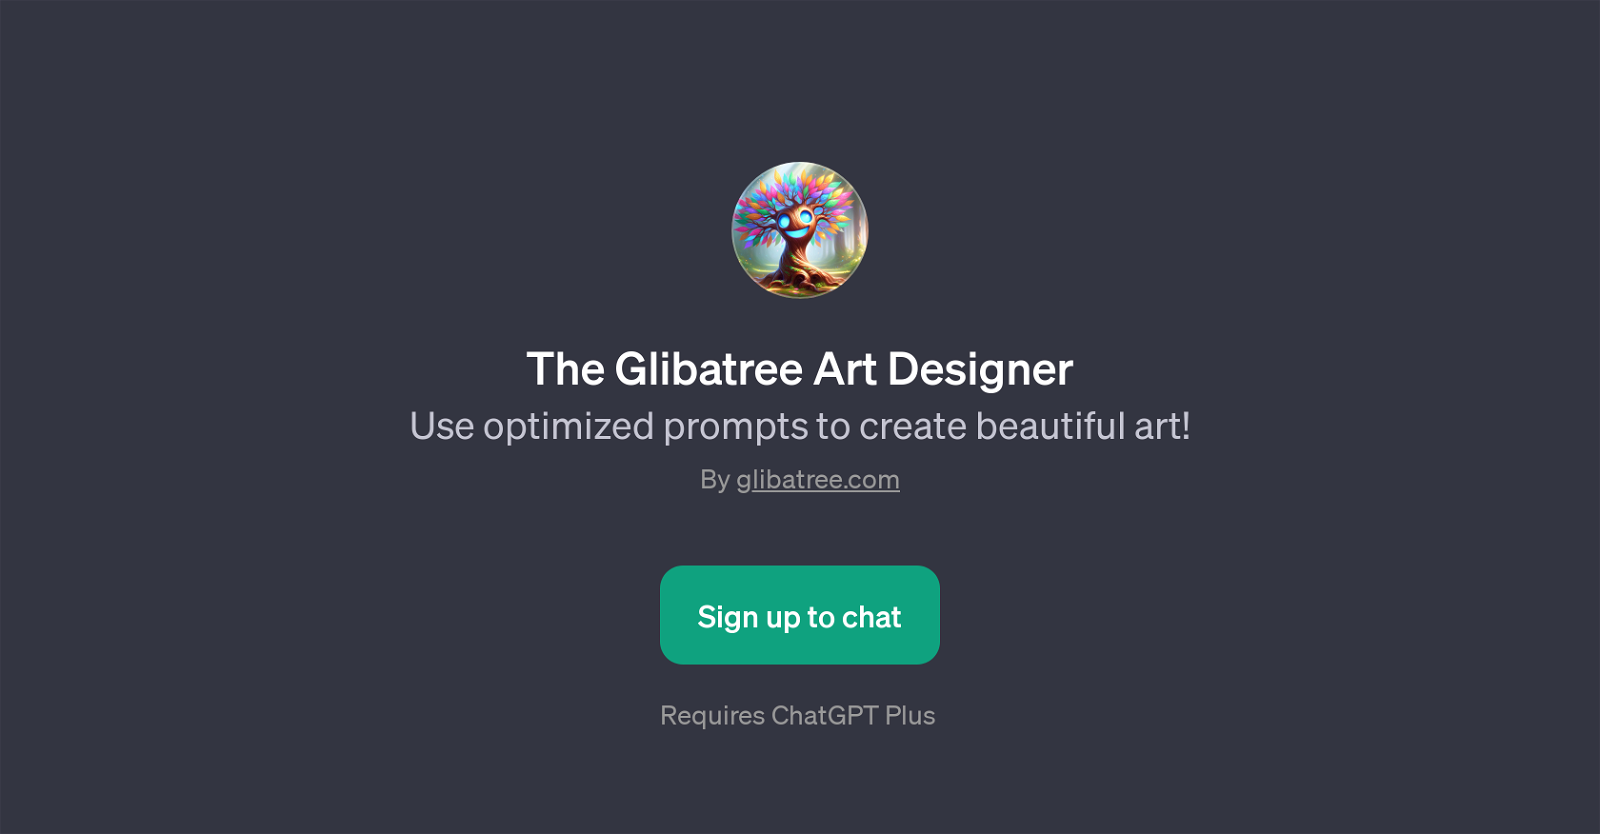 The Glibatree Art Designer website